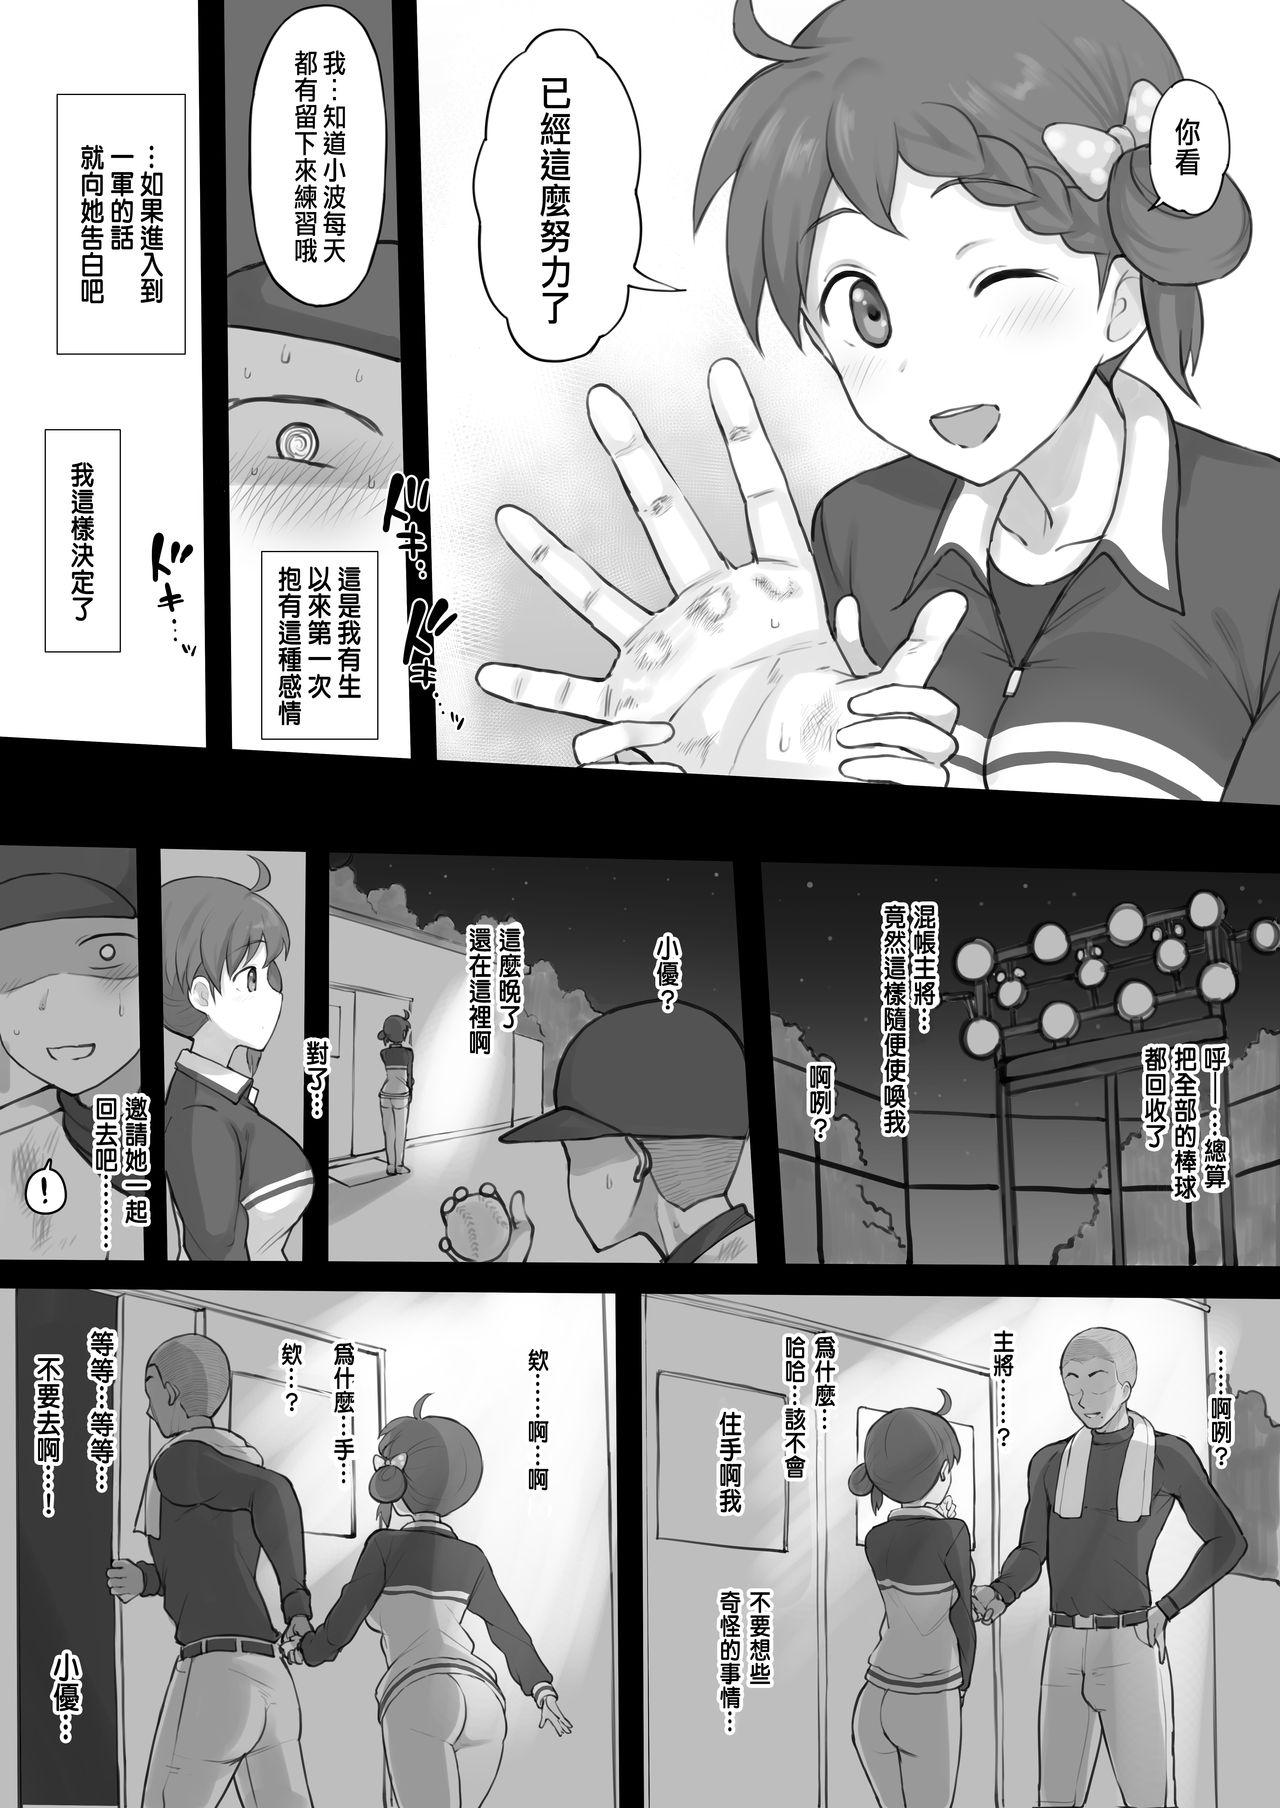 Little エロ漫画6月号-パワプロ - Jikkyou powerful pro yakyuu Men - Page 3